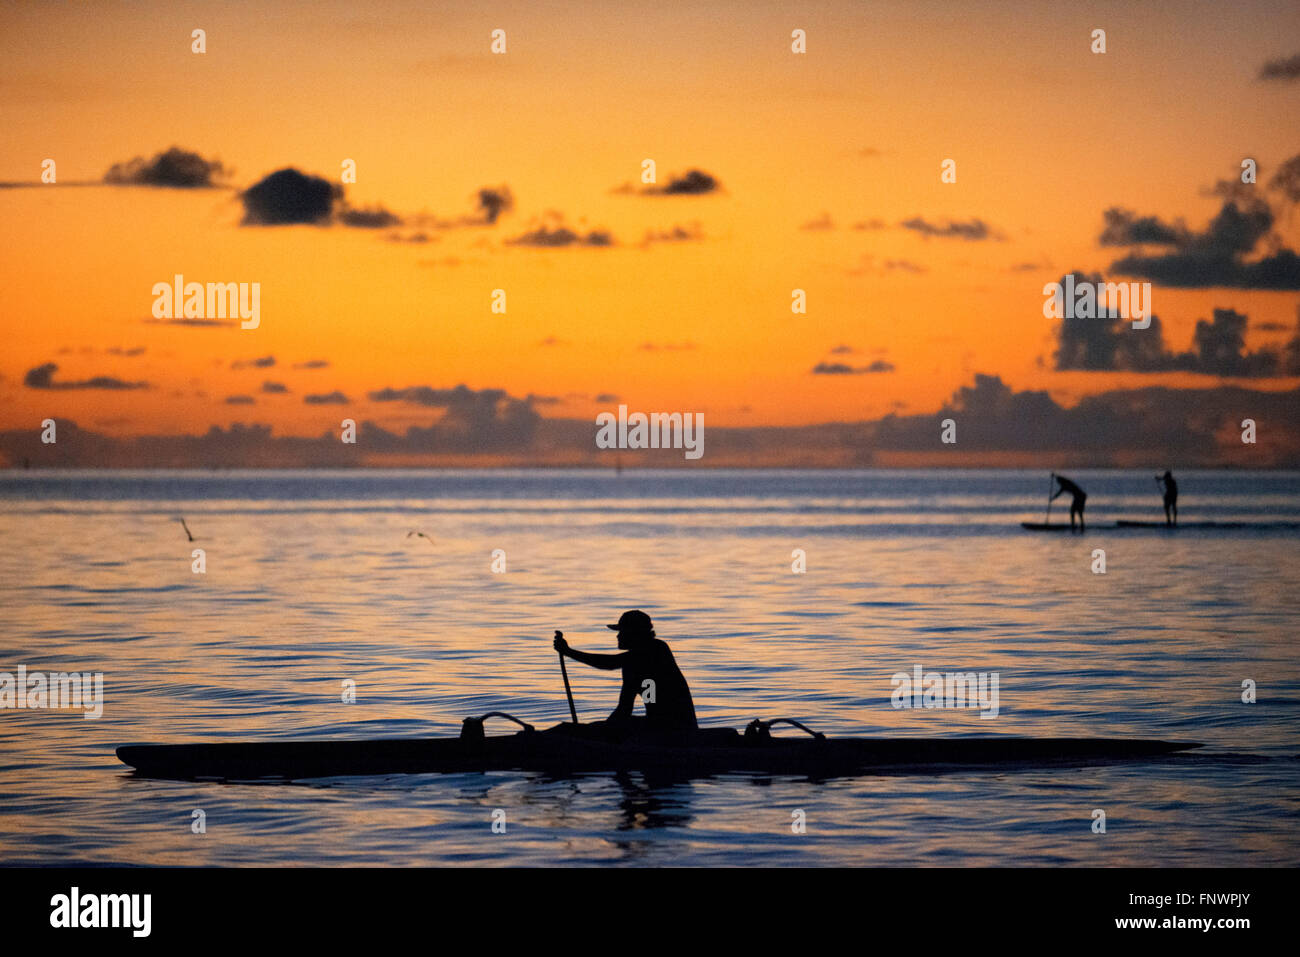 Rudern bei Sonnenuntergang in Französisch-Polynesien, Tahiti Nui, Gesellschaftsinseln, Französisch-Polynesien, Tahiti, Südsee. Stockfoto